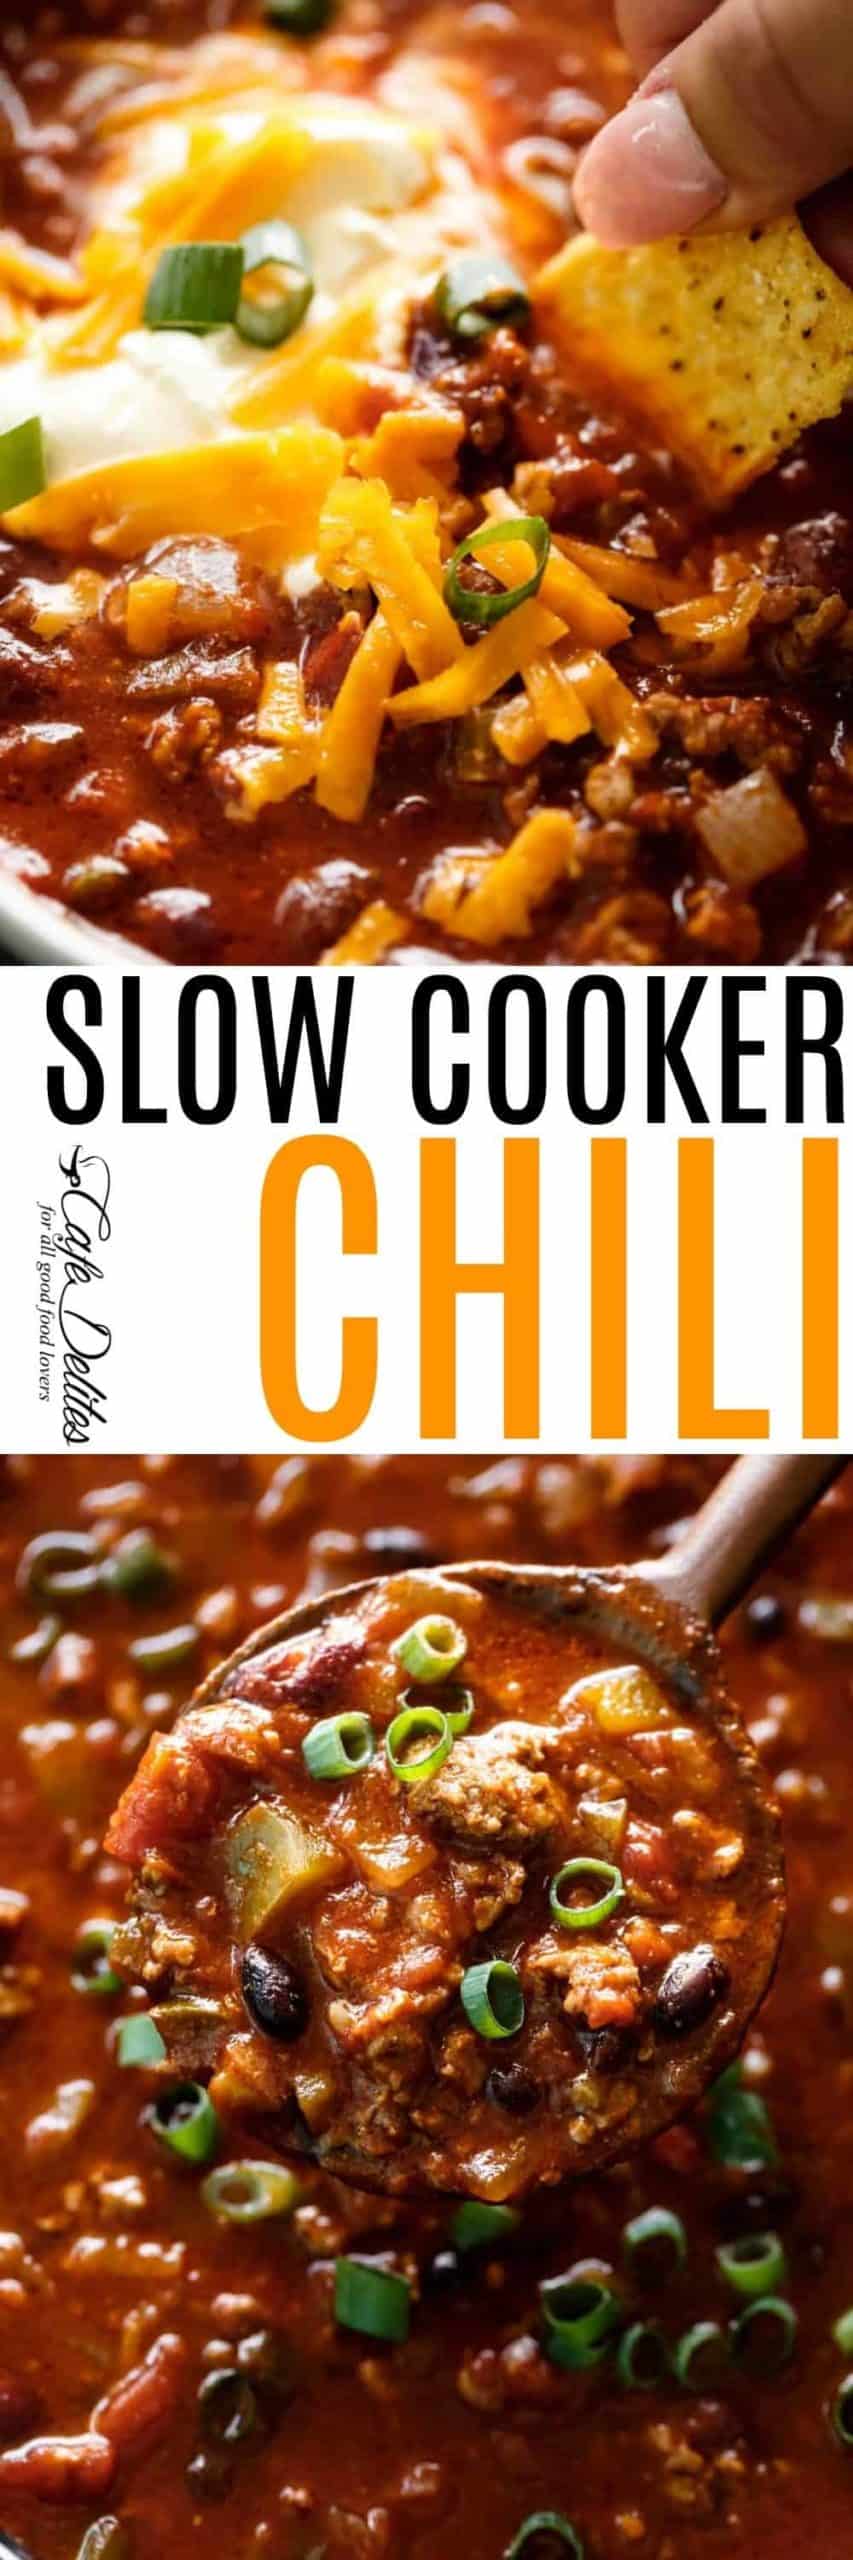 Slow Cooker Chili | cafedelites.com